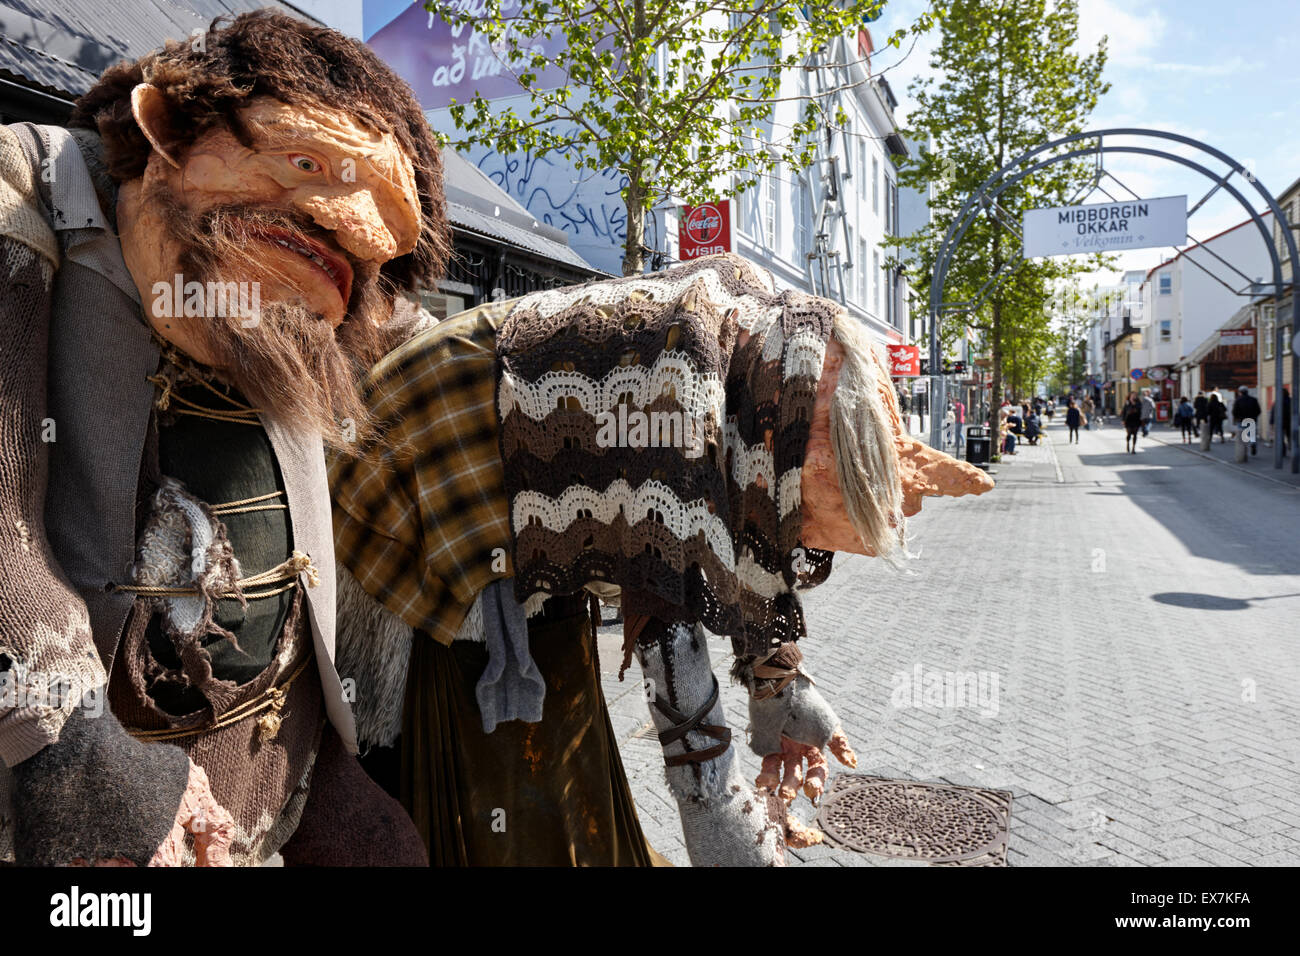 trolls displaying woolen clothing on Laugavegur main pedestrian shopping street Reykjavik iceland Stock Photo